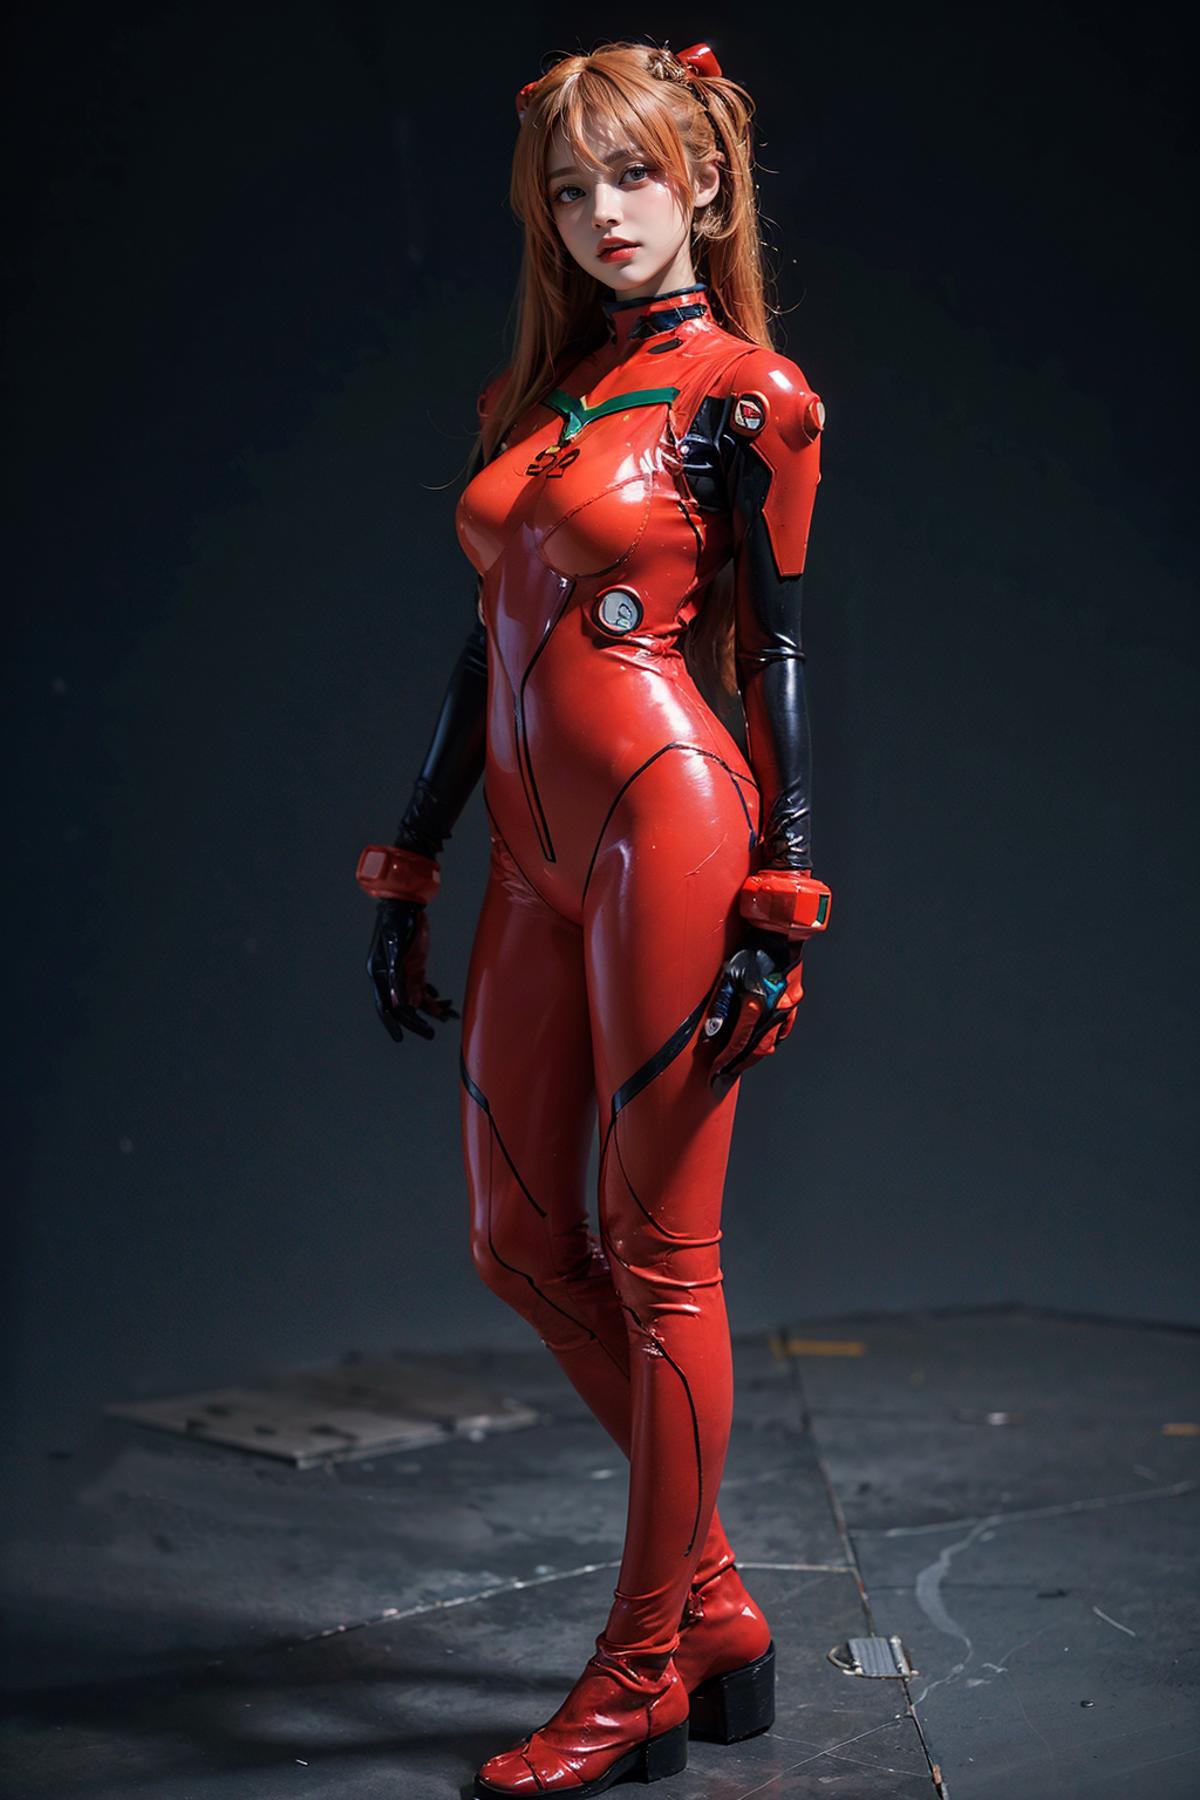 <Evangelion> Asuka Langley plugsuit cosplay costume |《Evangelion》明日香 战斗服 cos 服 |「Evangelion」 アスカ バトルスーツ コスプレ衣装 image by cyberAngel_